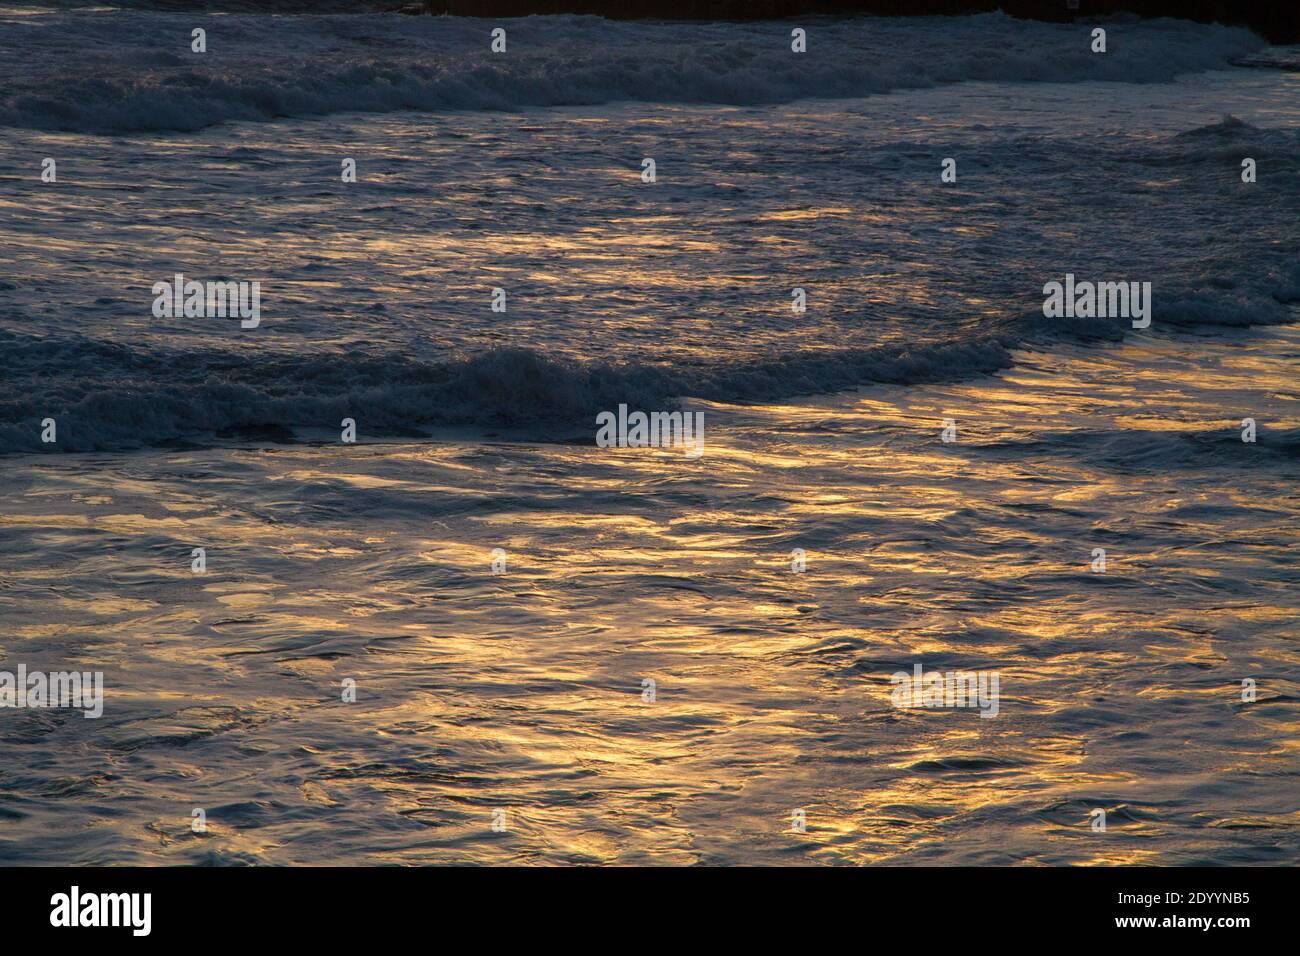 Inspirierende Zusammenfassung Vgolden ruhiges Meer bei Sonnenuntergang, Freiheit Meditation Konzept, beruhigende Wasser Hintergrund Stockfoto